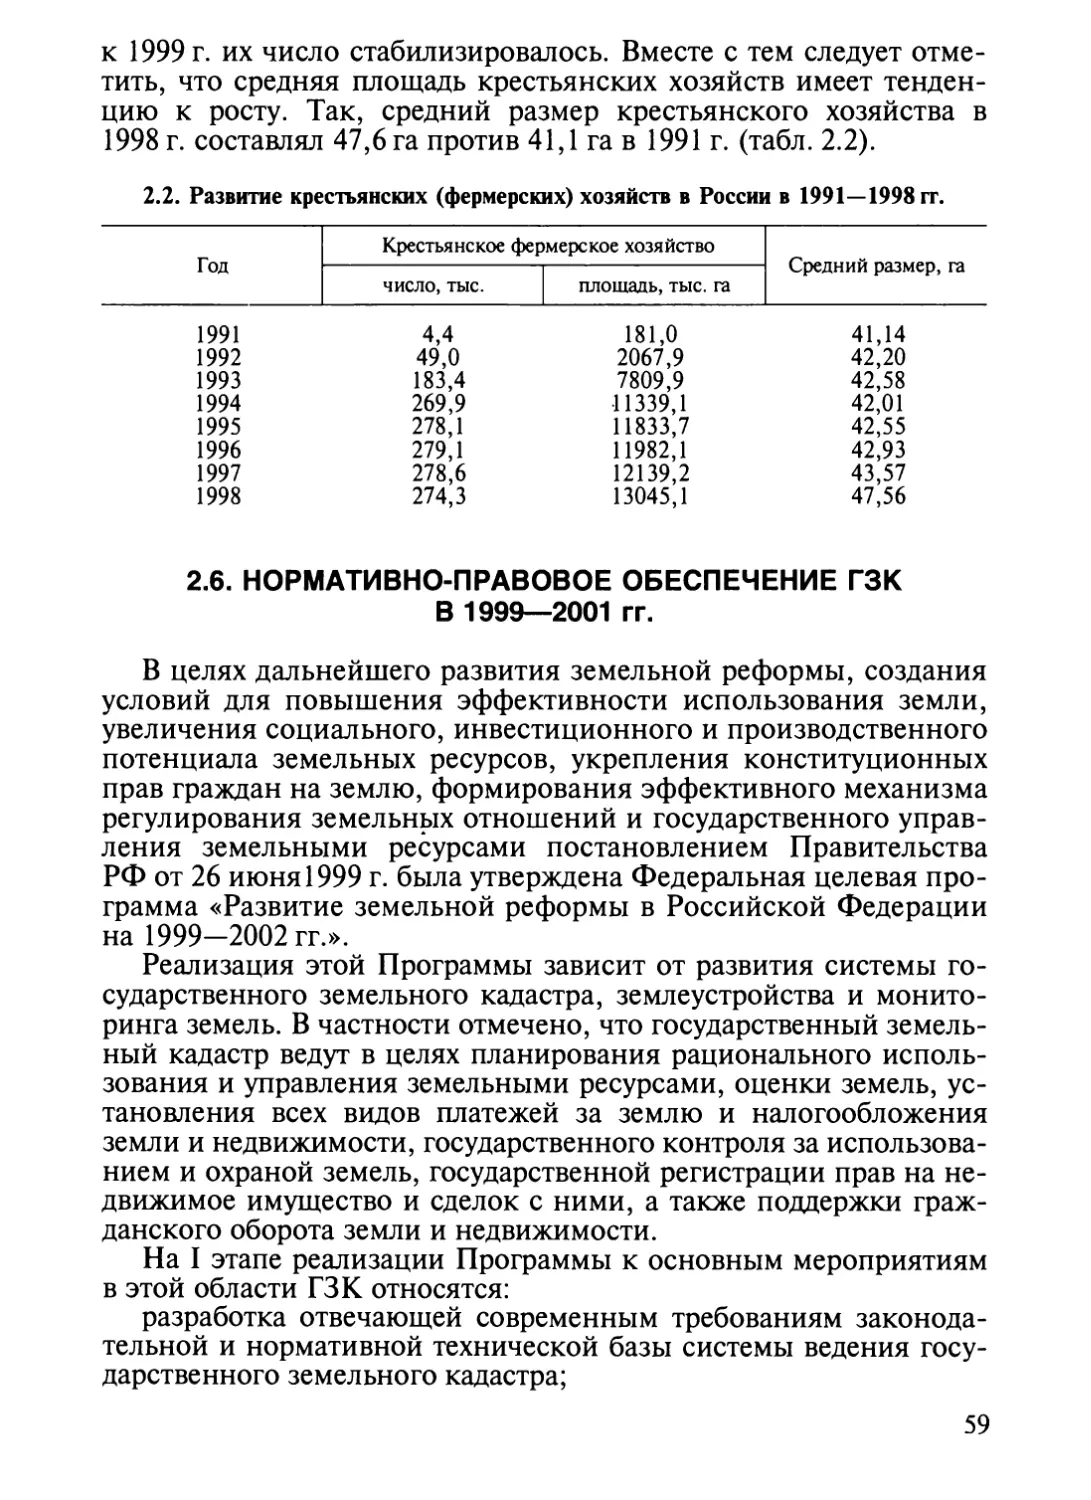 2.6.. Нормативно-правовое обеспечение ГЗК в 1999—2001 гг